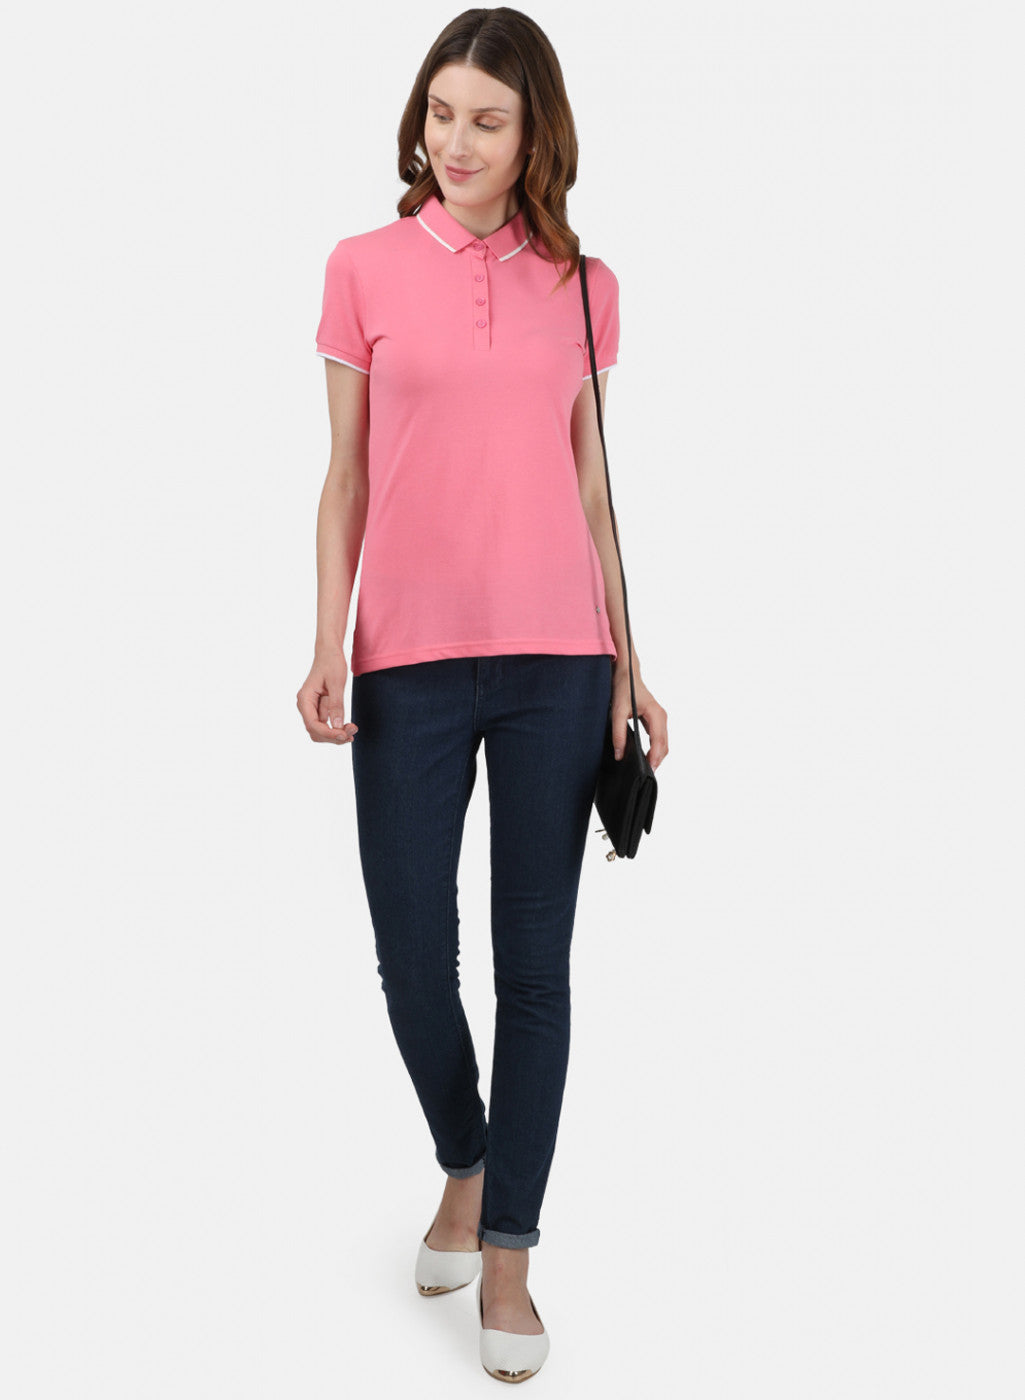 Womens Light Pink Plain T-Shirt